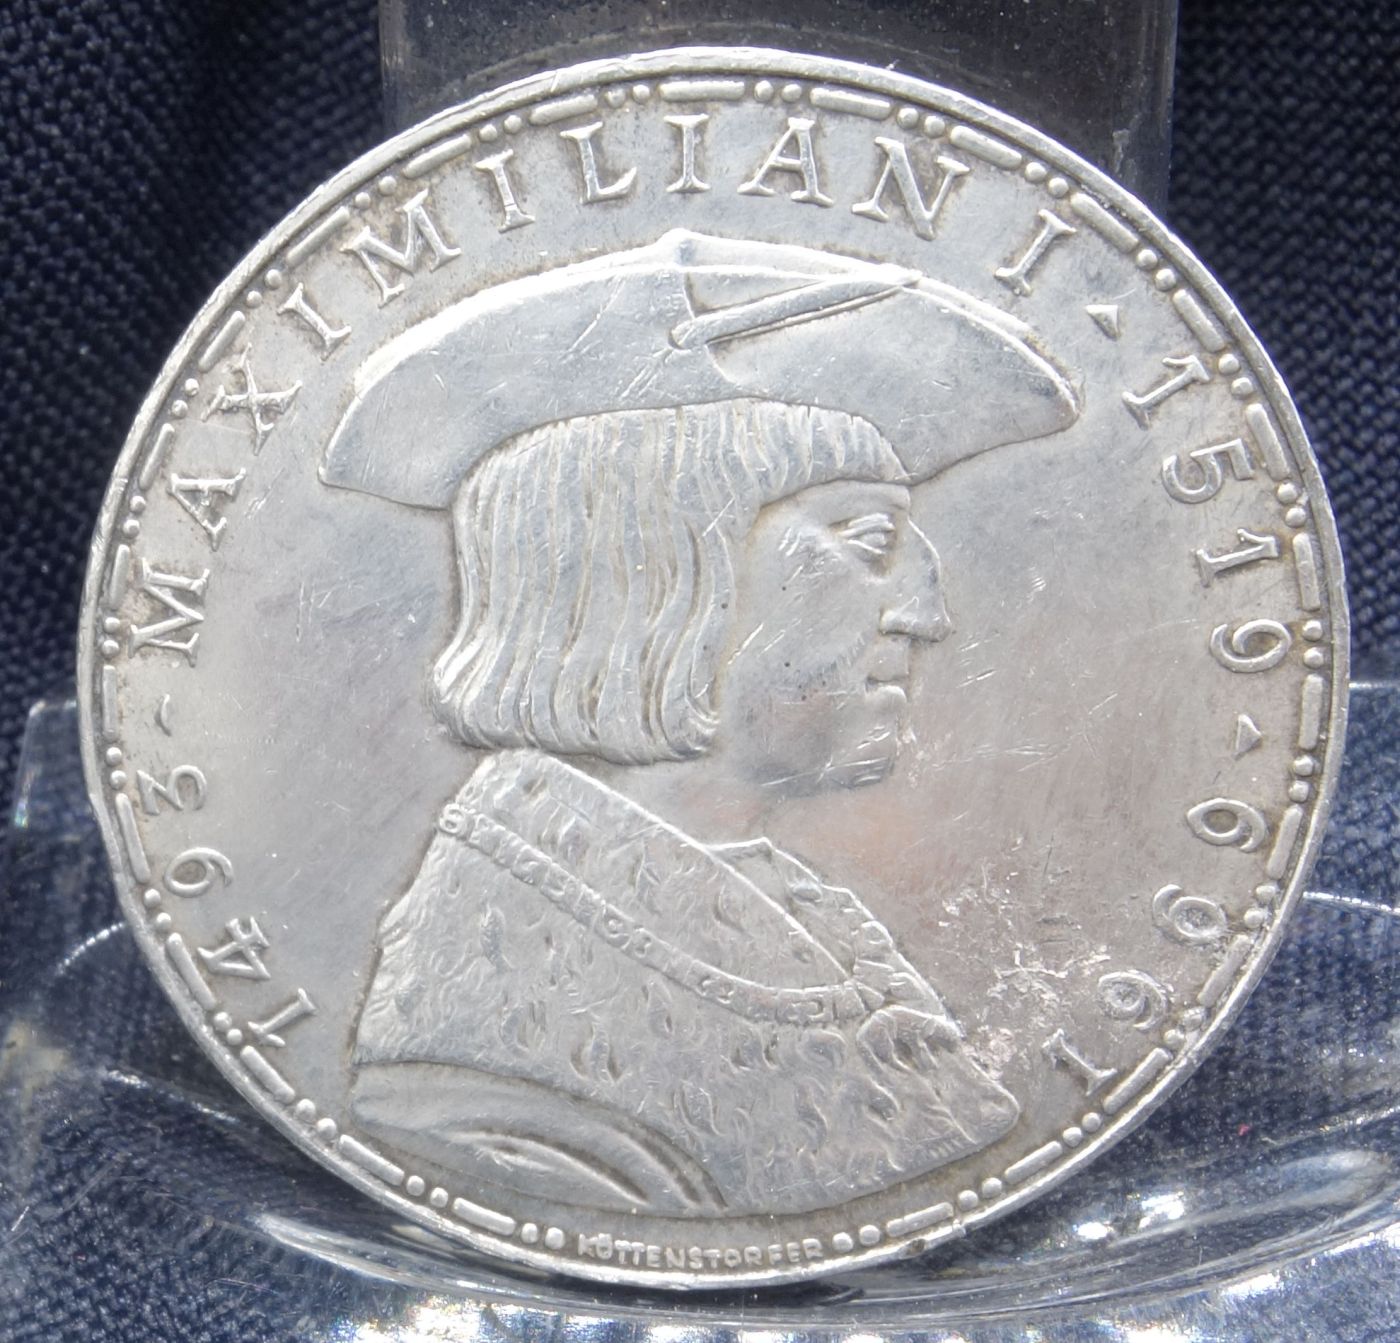 COIN OF 1969 (Austria)